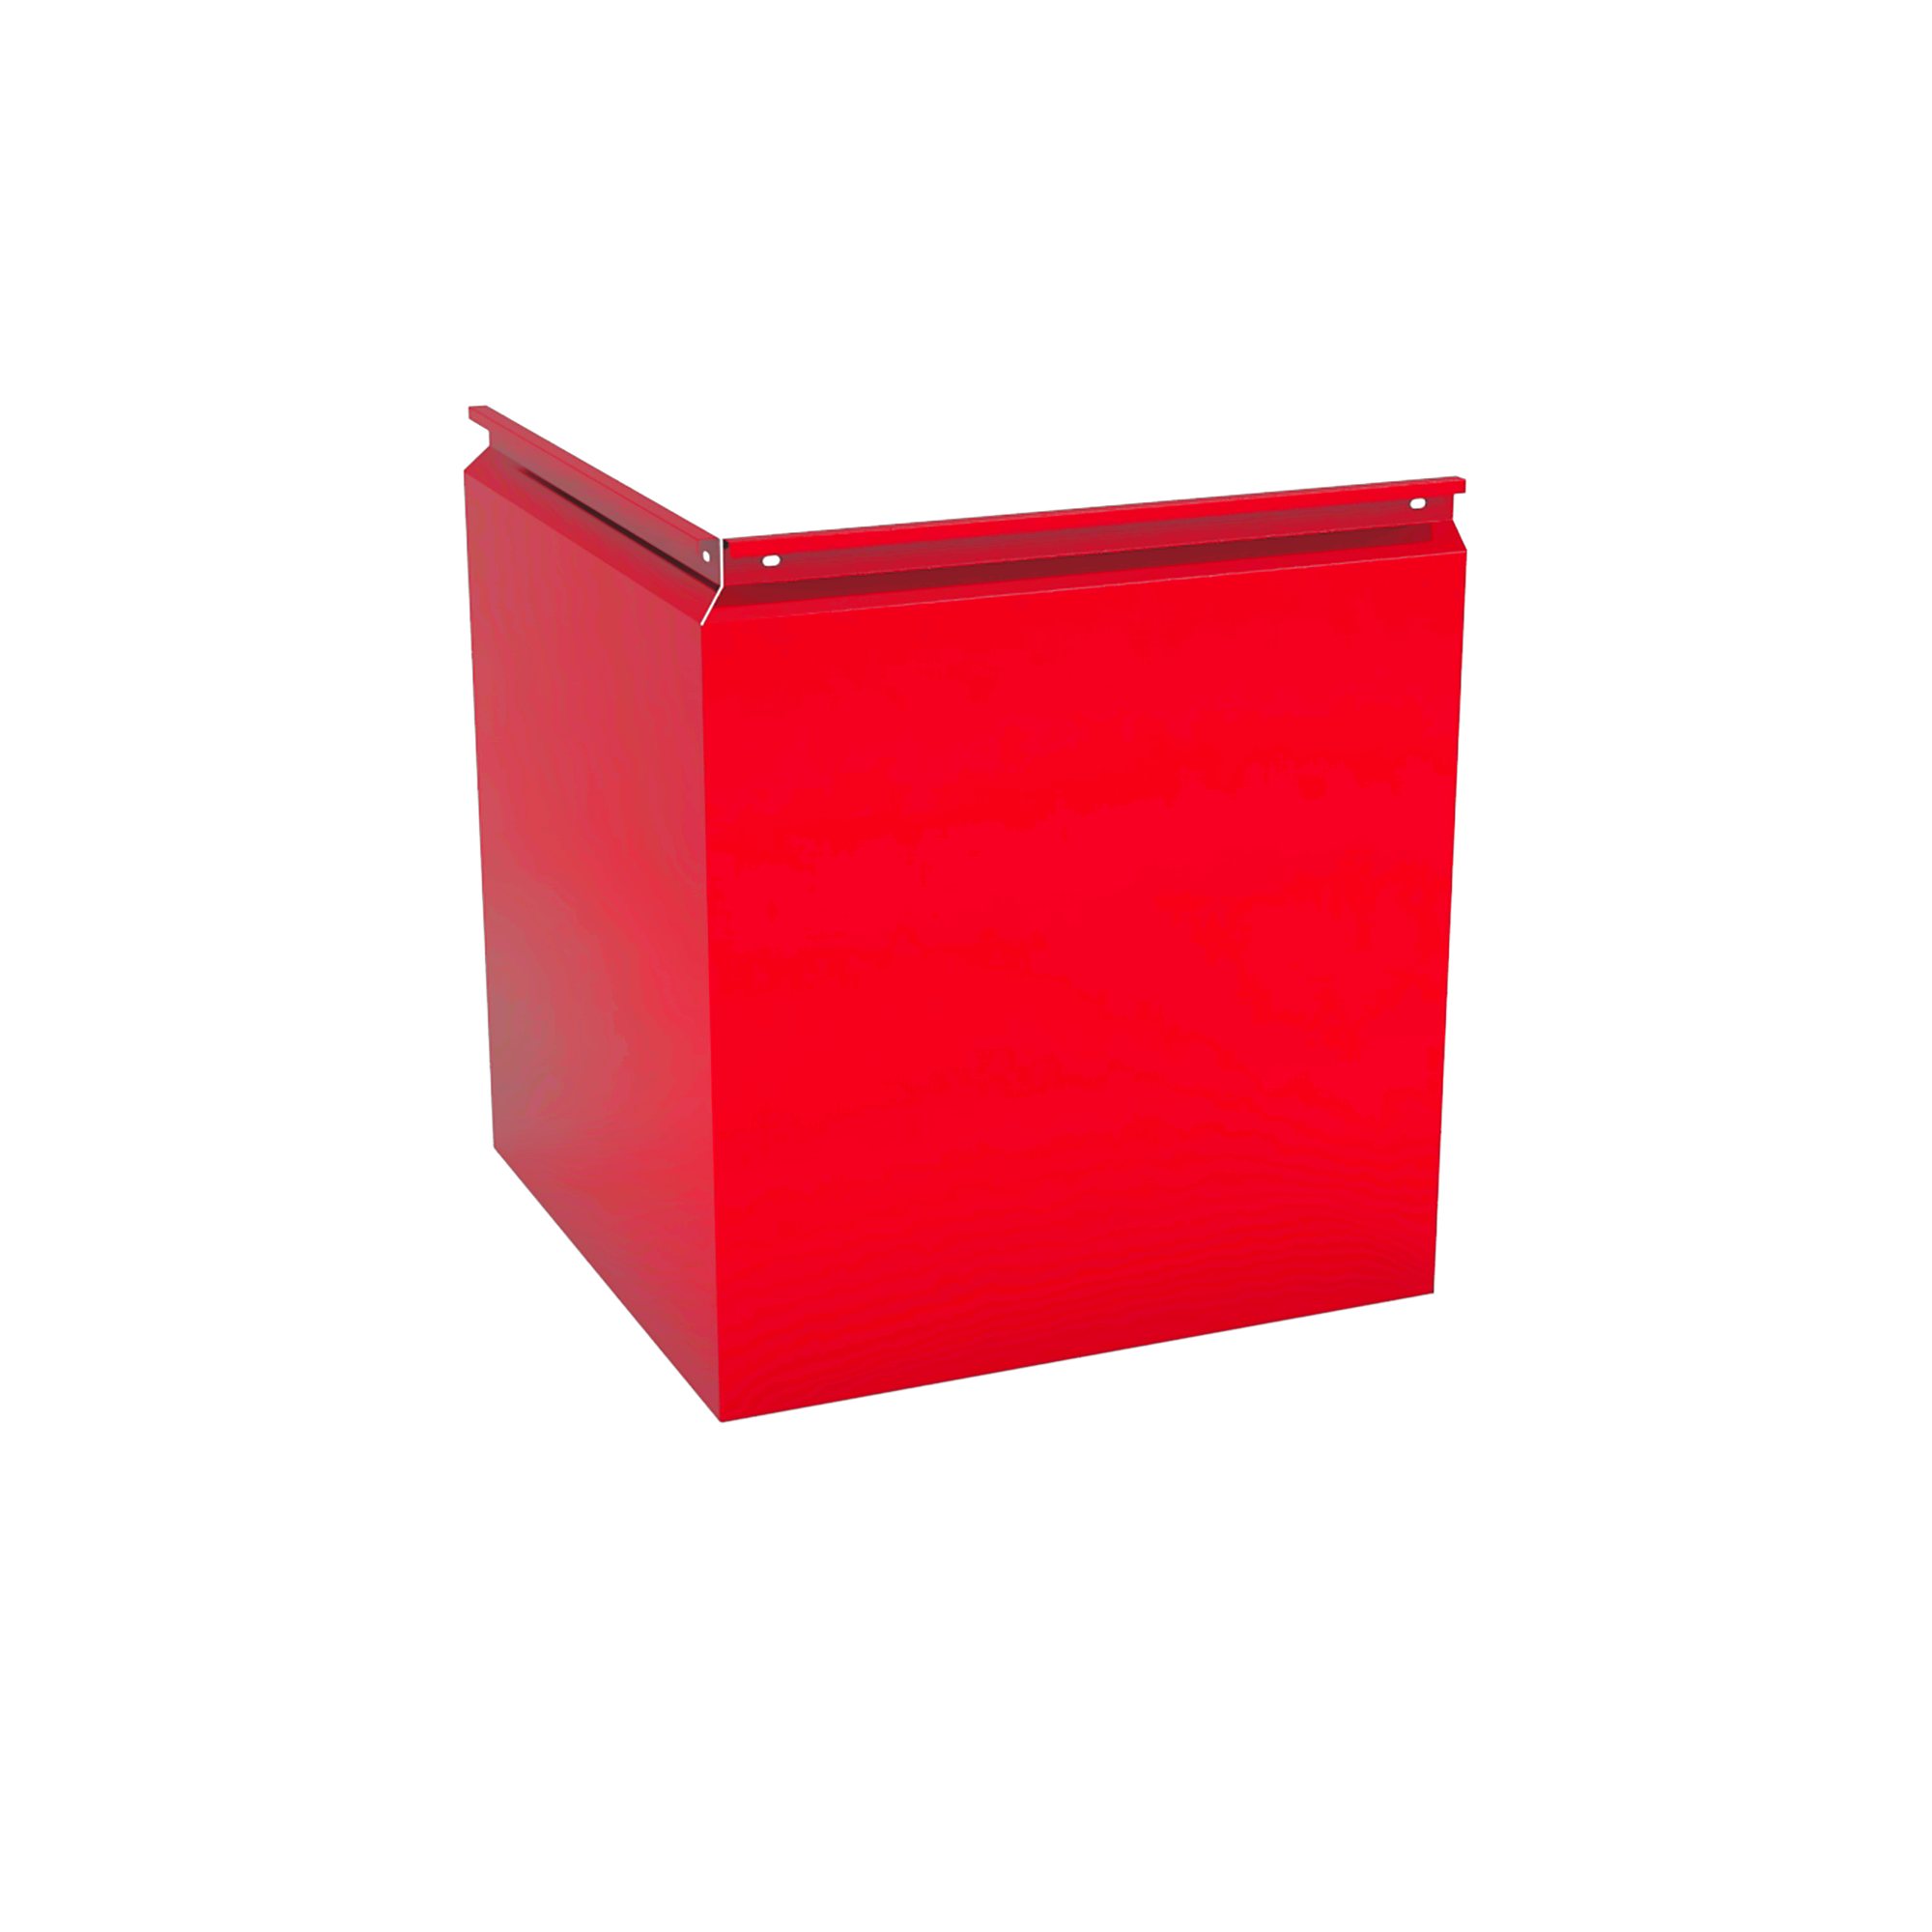 Фасадная кассета Угловая 1025 Транспортный красный 0,65 мм Фасадные кассеты Кровля Сервис